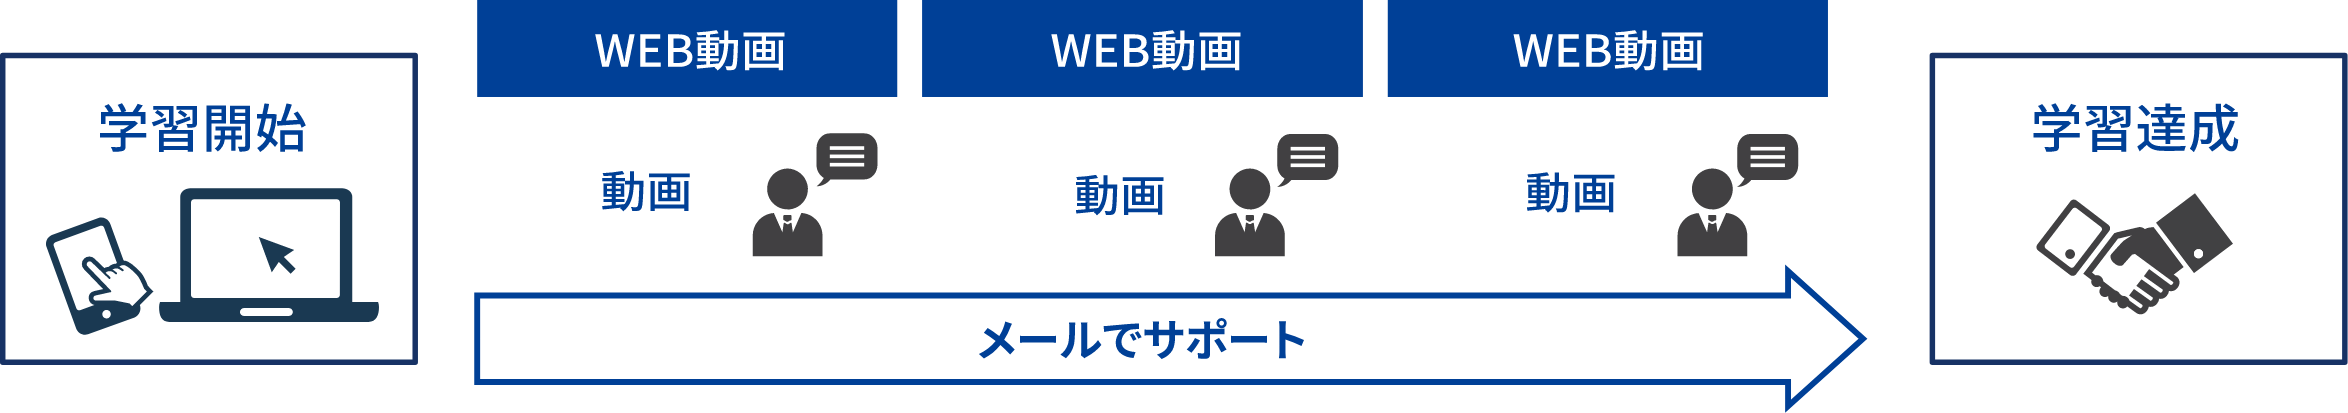 WEB動画